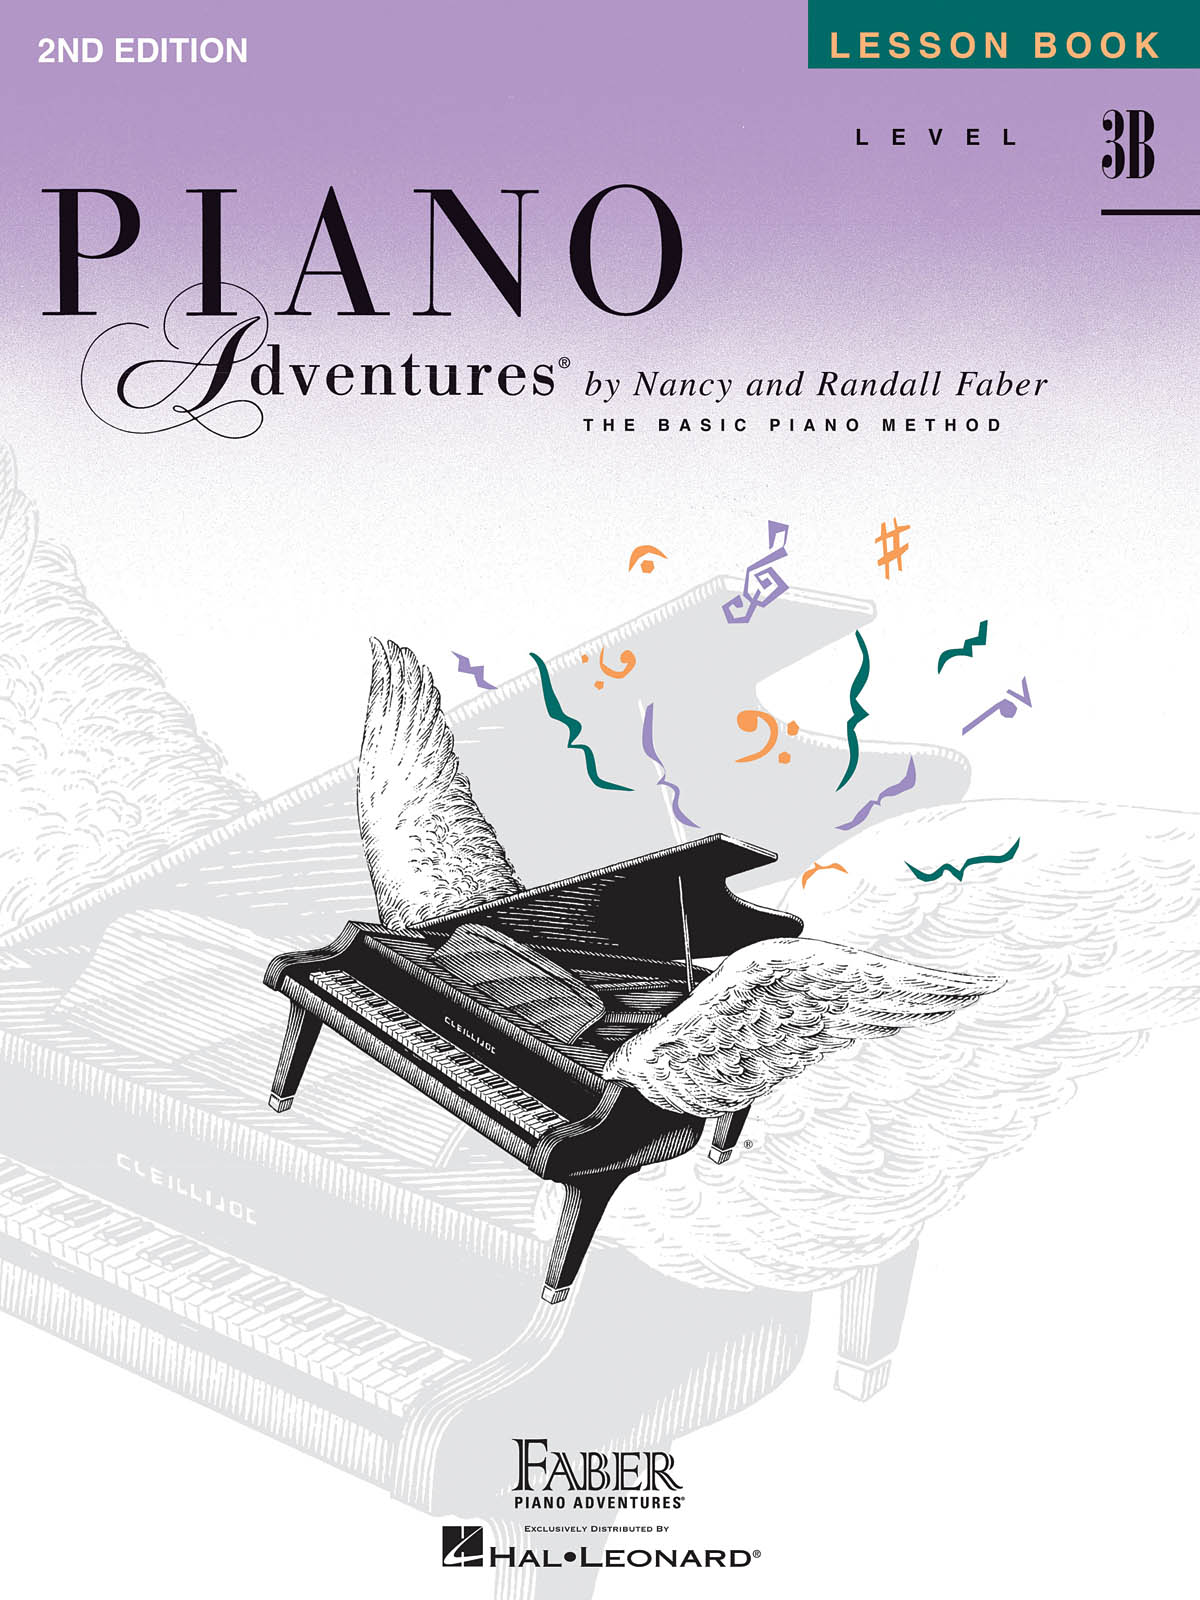 Piano Adventures Lesson Book Level 3B - 2nd Edition učebnice pro klavír